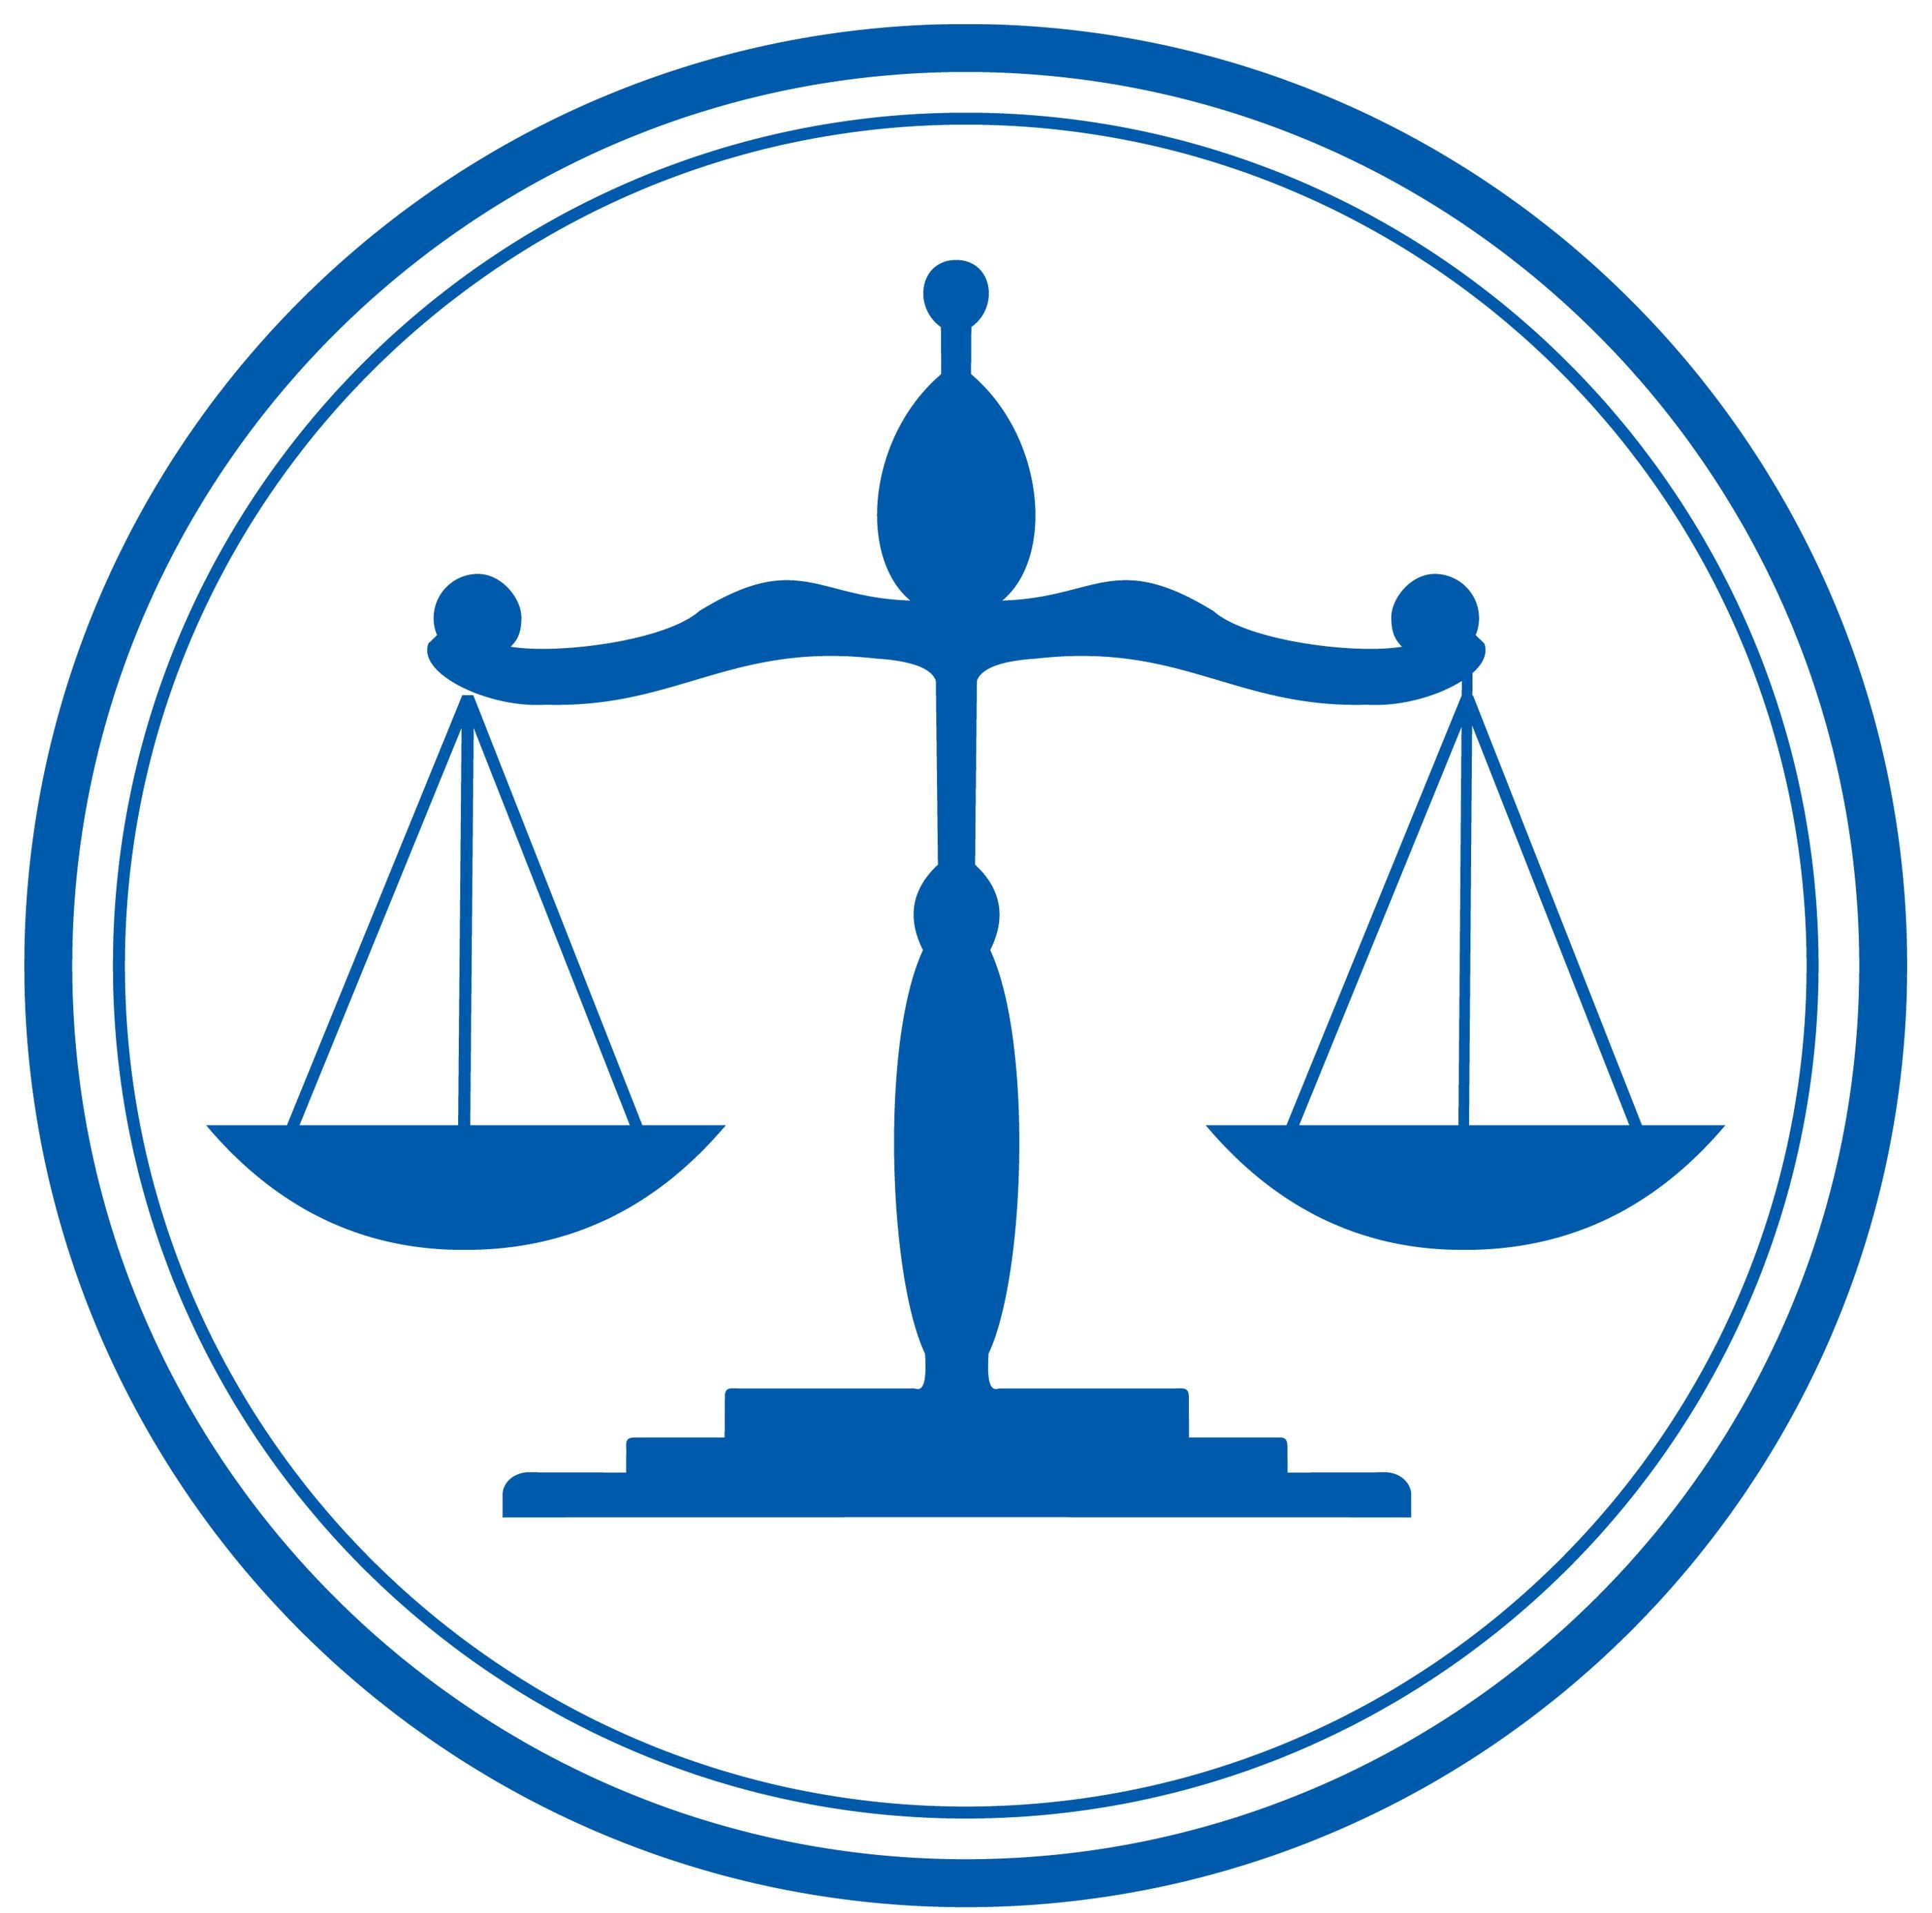 Чаши весов, как символ урегулирования споров в Верховном федеральном суде США